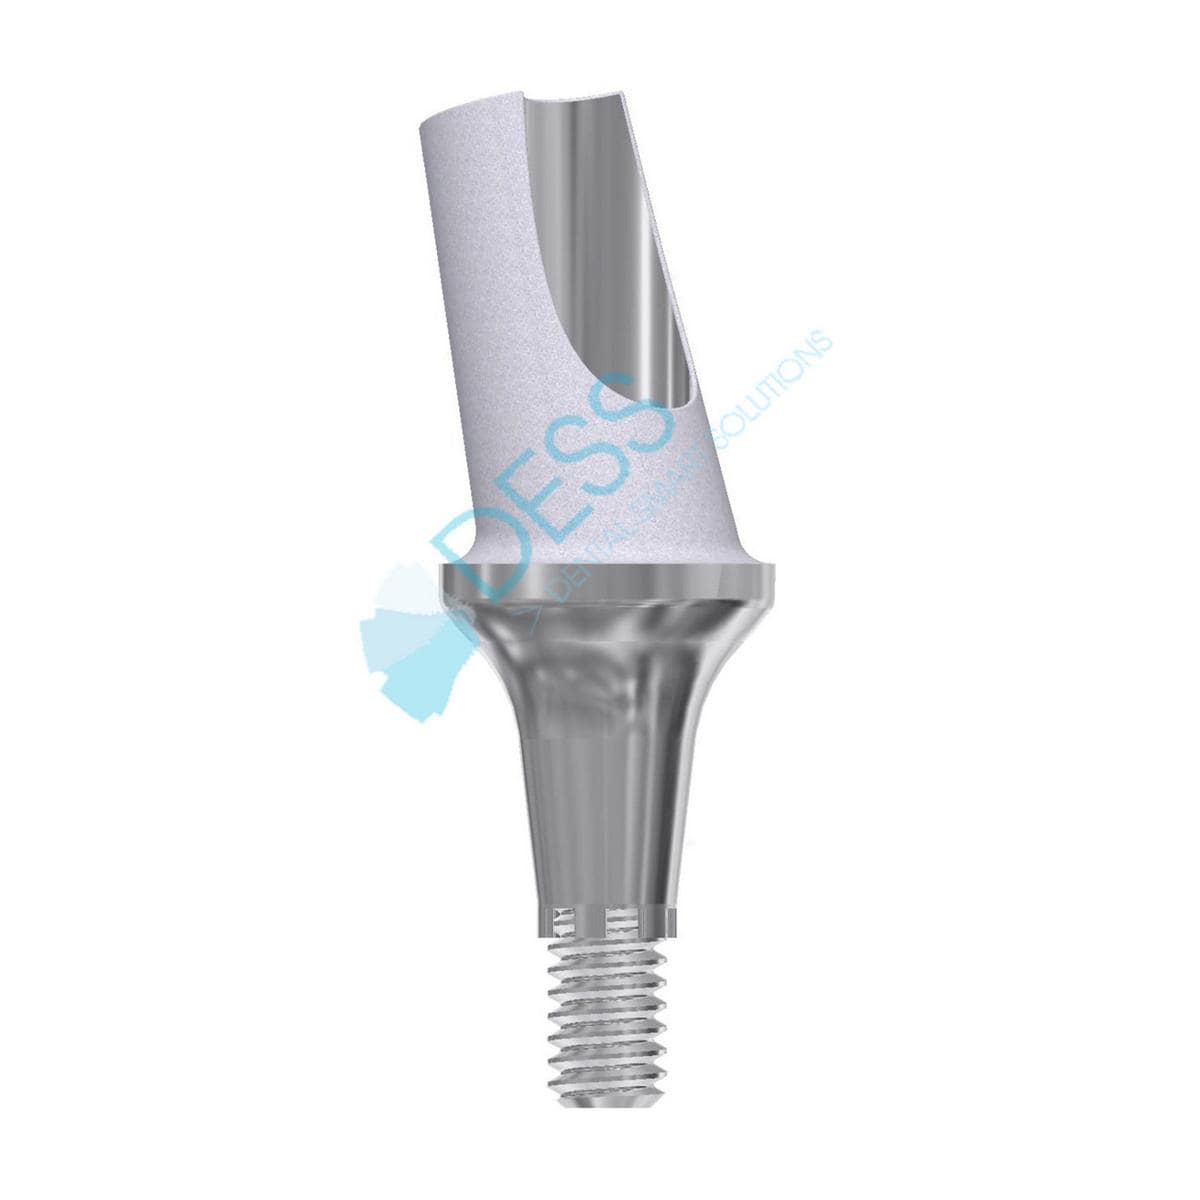 Titanabutment - kompatibel mit Dentsply Ankylos® - Höhe 3,0 mm, 15° gewinkelt, mit Rotationsschutz,